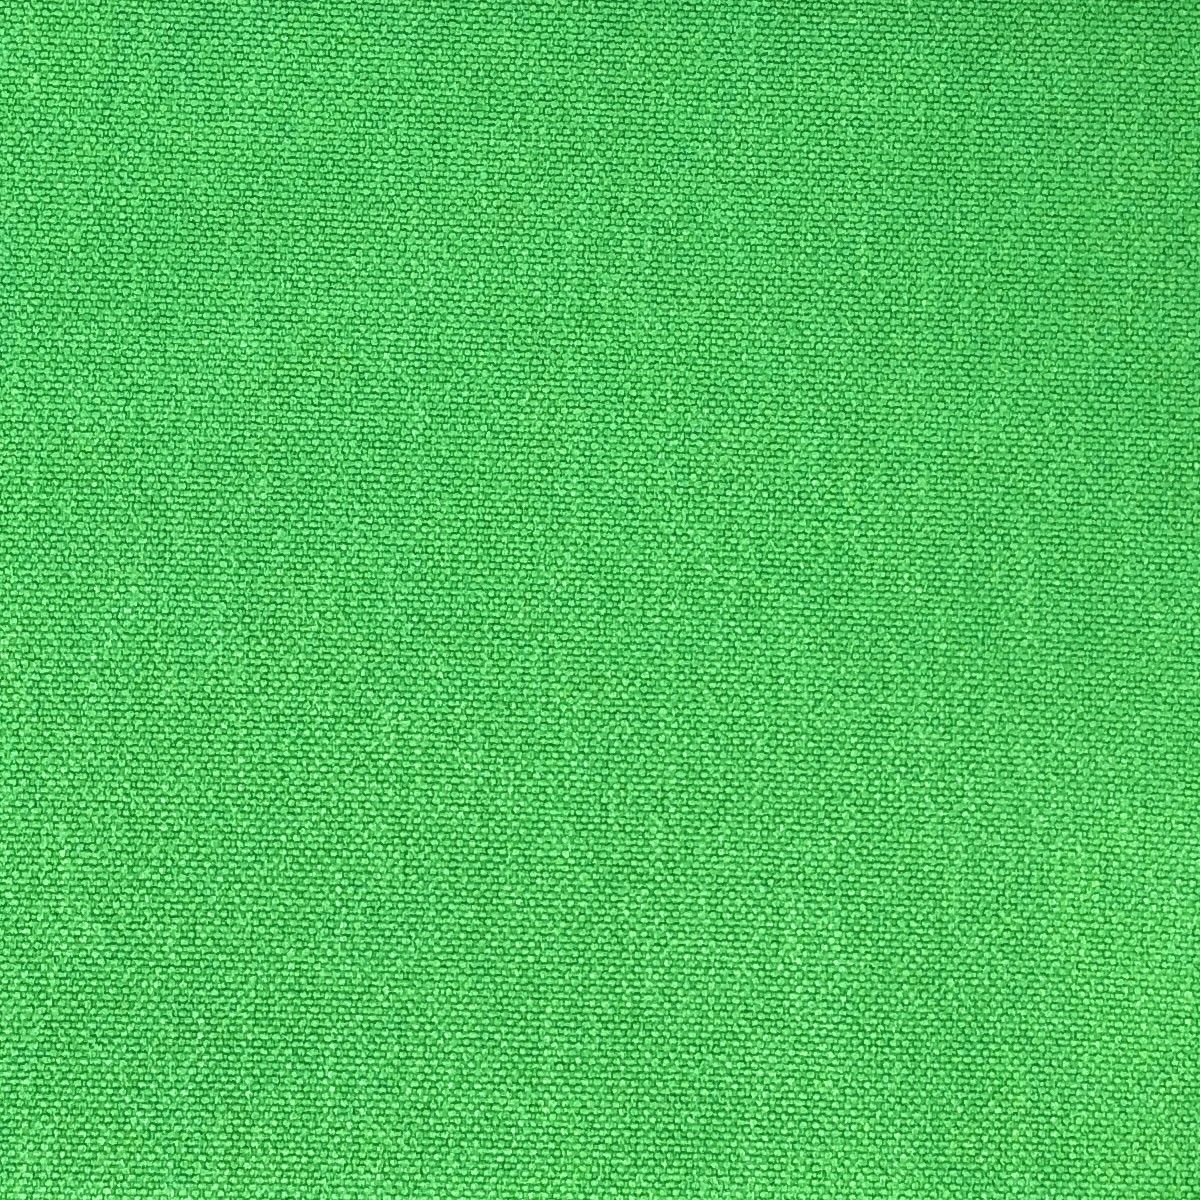 Glinara Emerald Fabric by Chatham Glyn